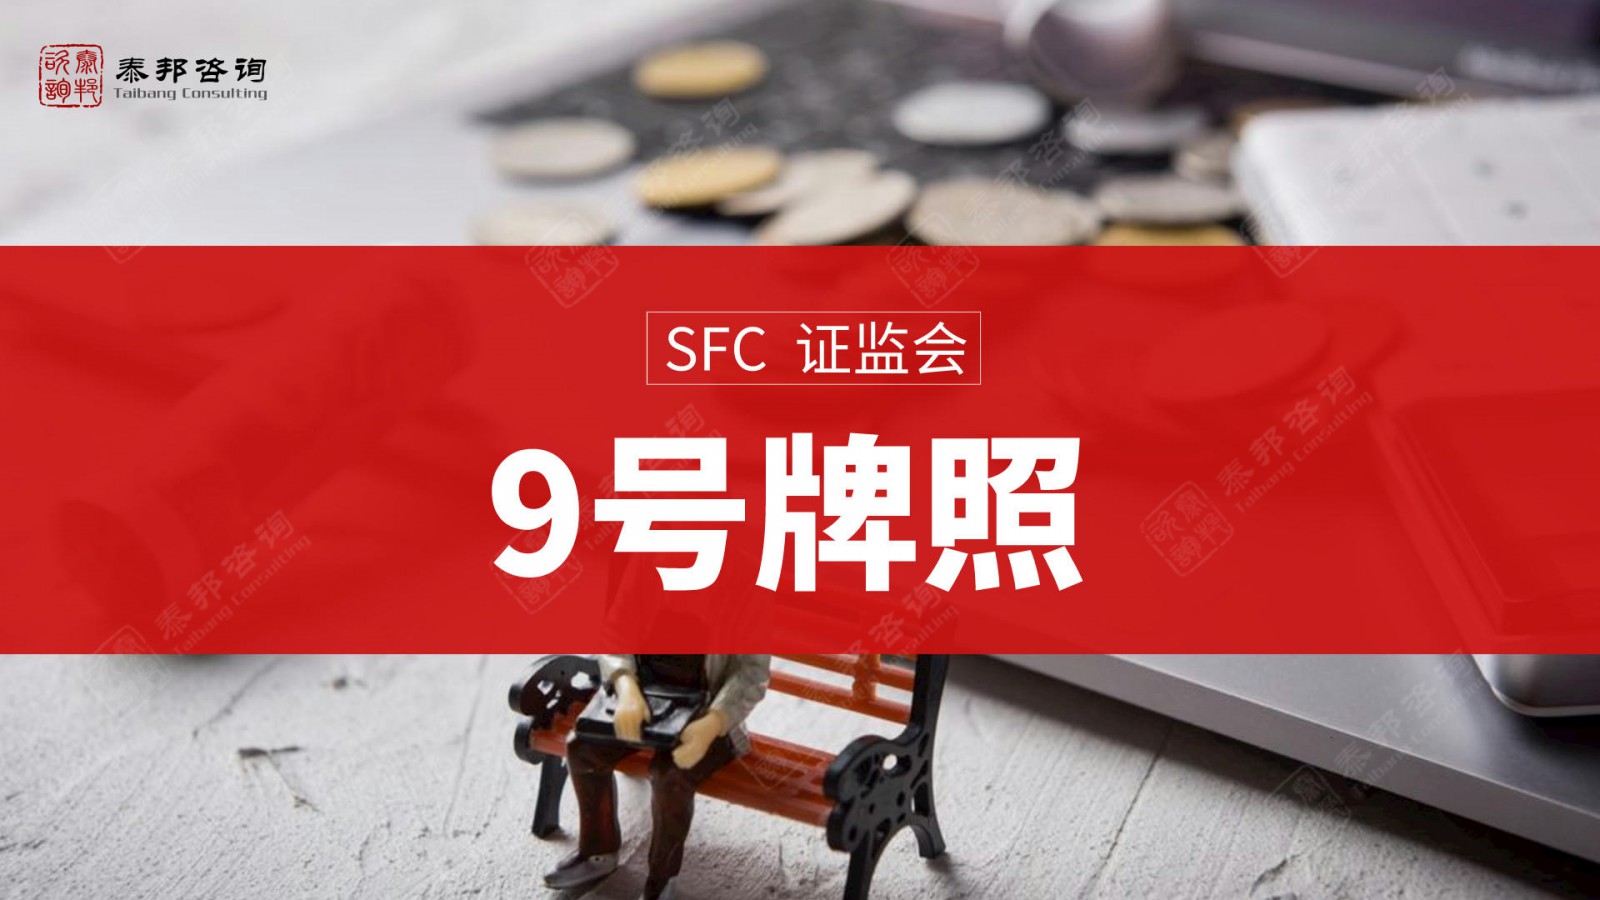 申请代办香港149号金融牌照10个方案